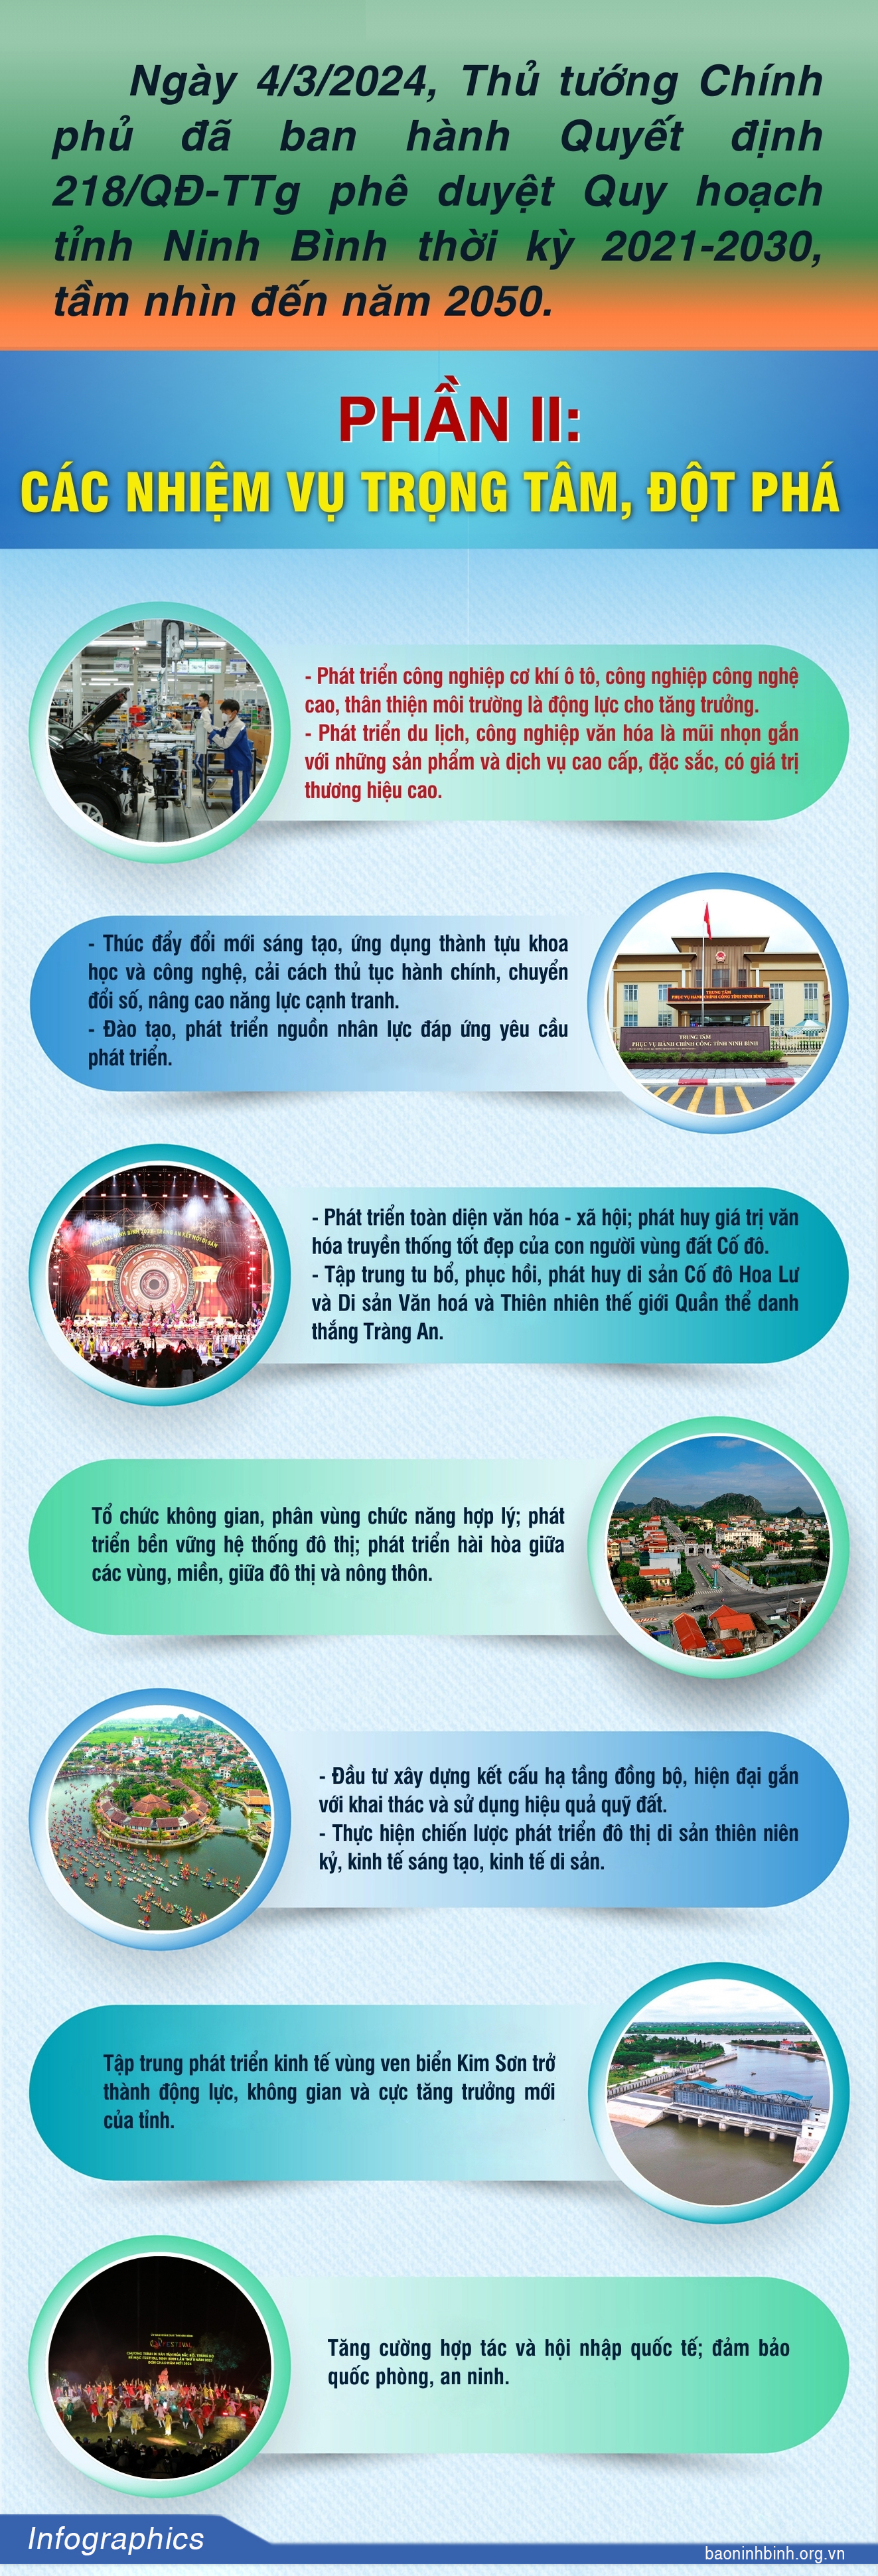 Infographic Quy hoạch tỉnh Ninh Bình thời kỳ 20212030 tầm nhìn đến năm 2050